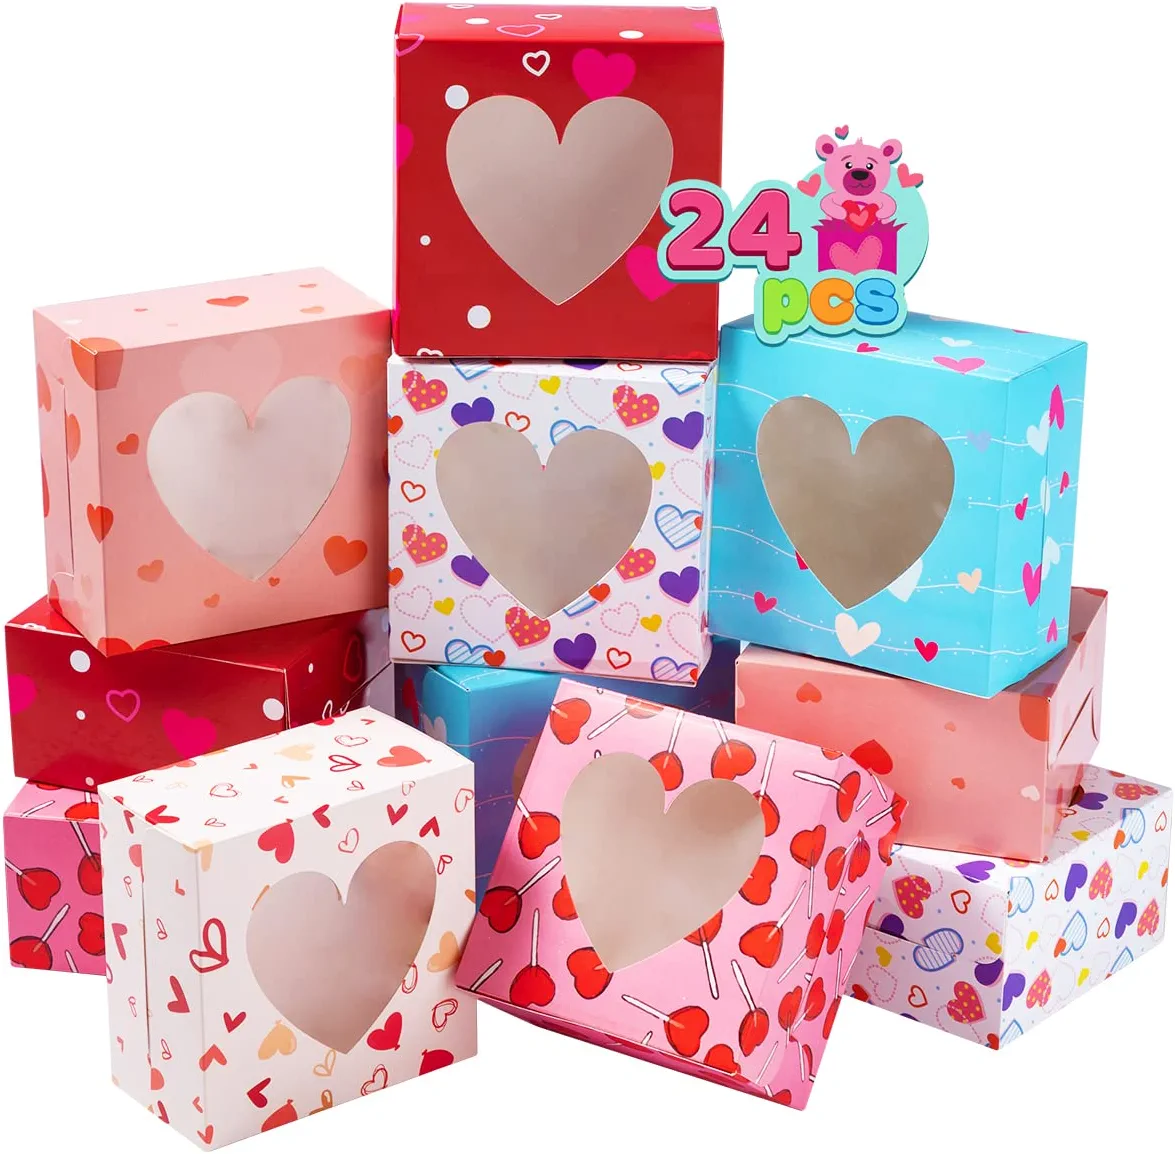 Alea's Deals 24pc Valentine's Day Cupcakes Box - 30% OFF!  